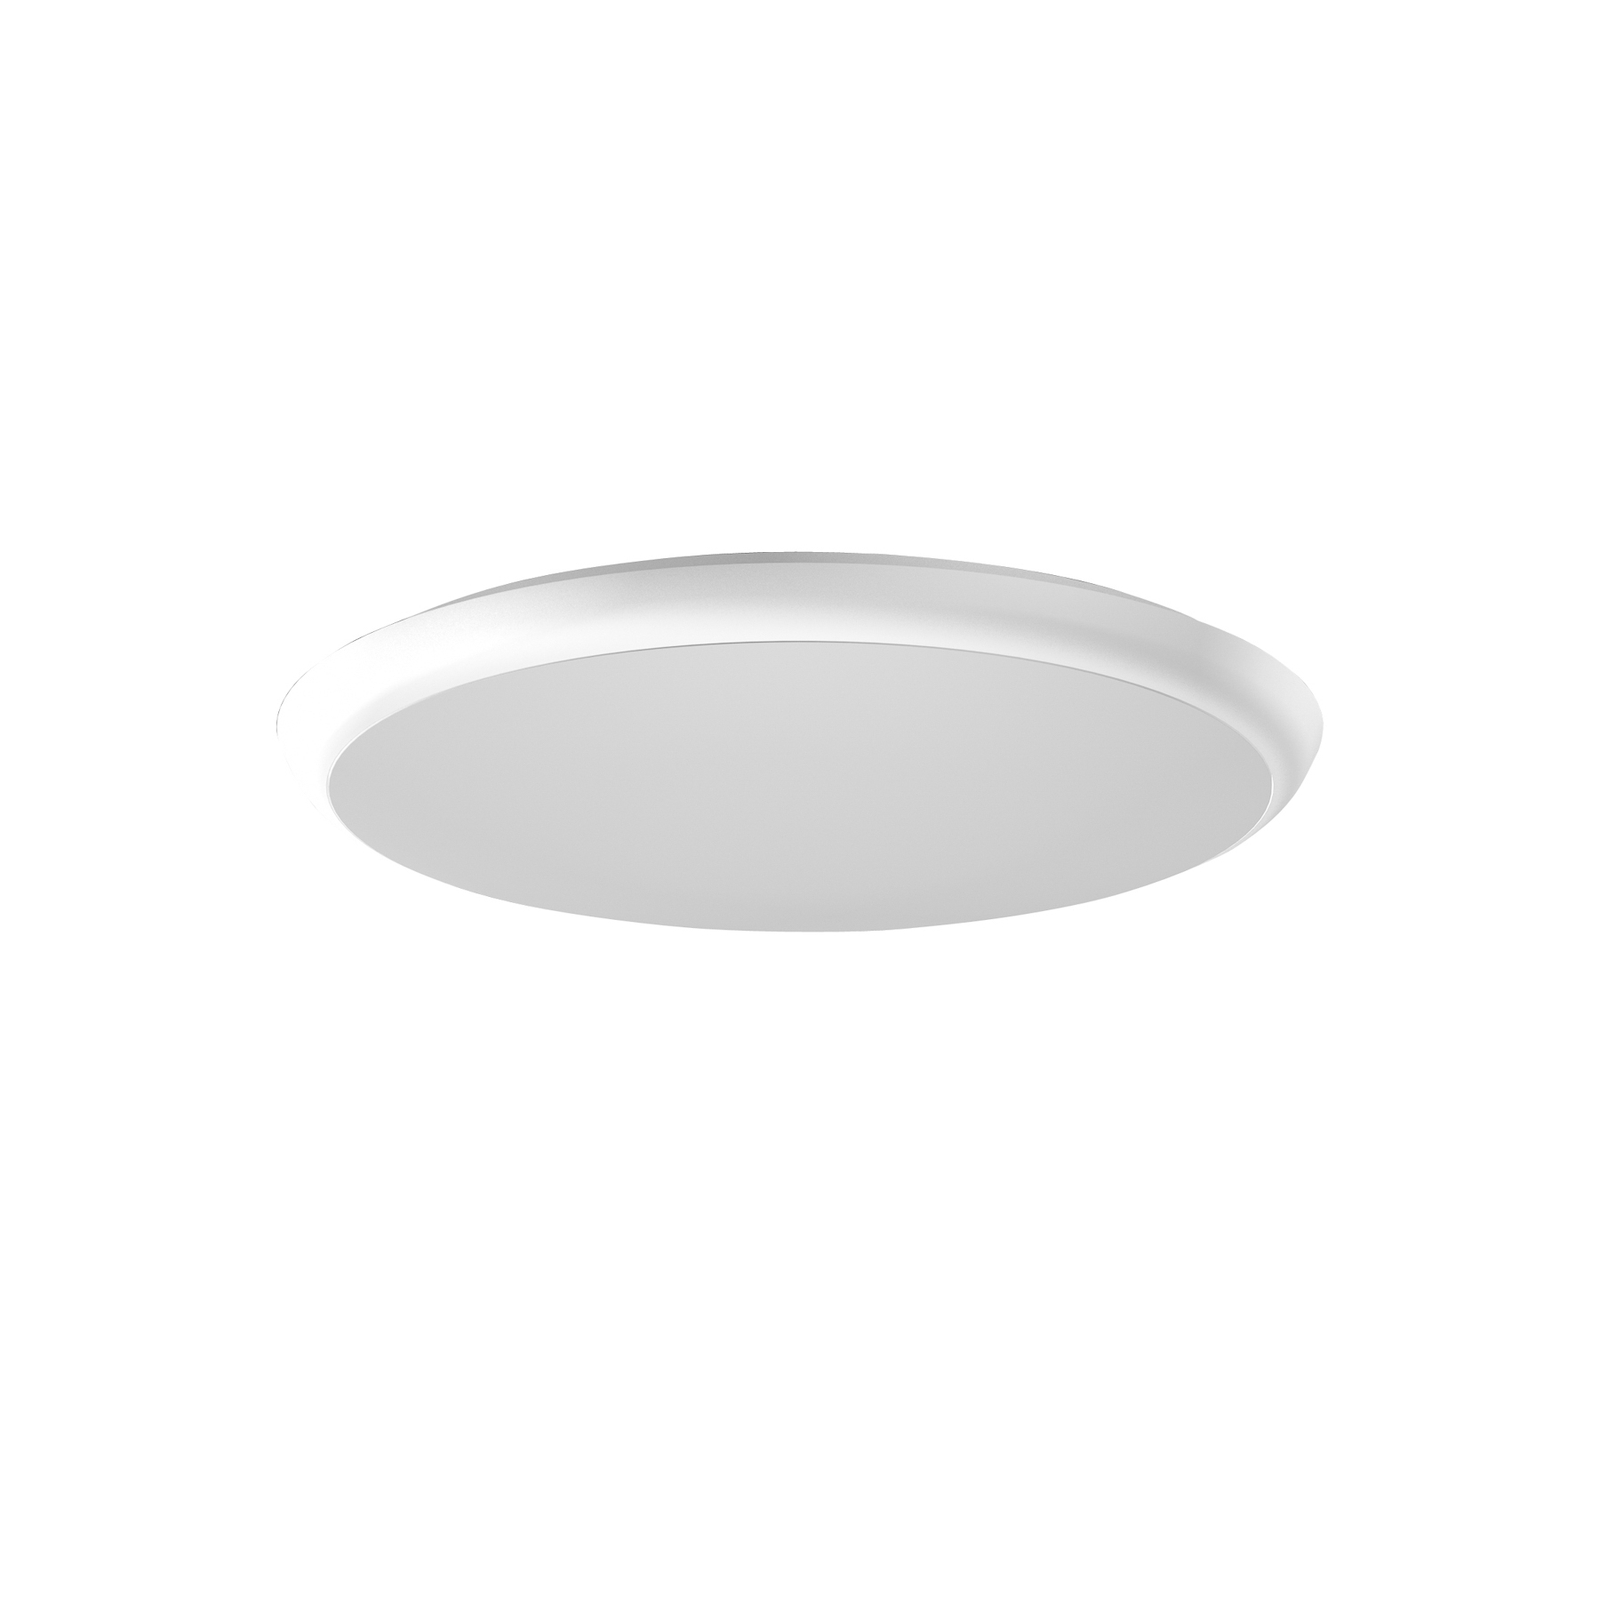 RZB HB 502 LED ceiling light, Ø 40 cm 30 W 4,000 K